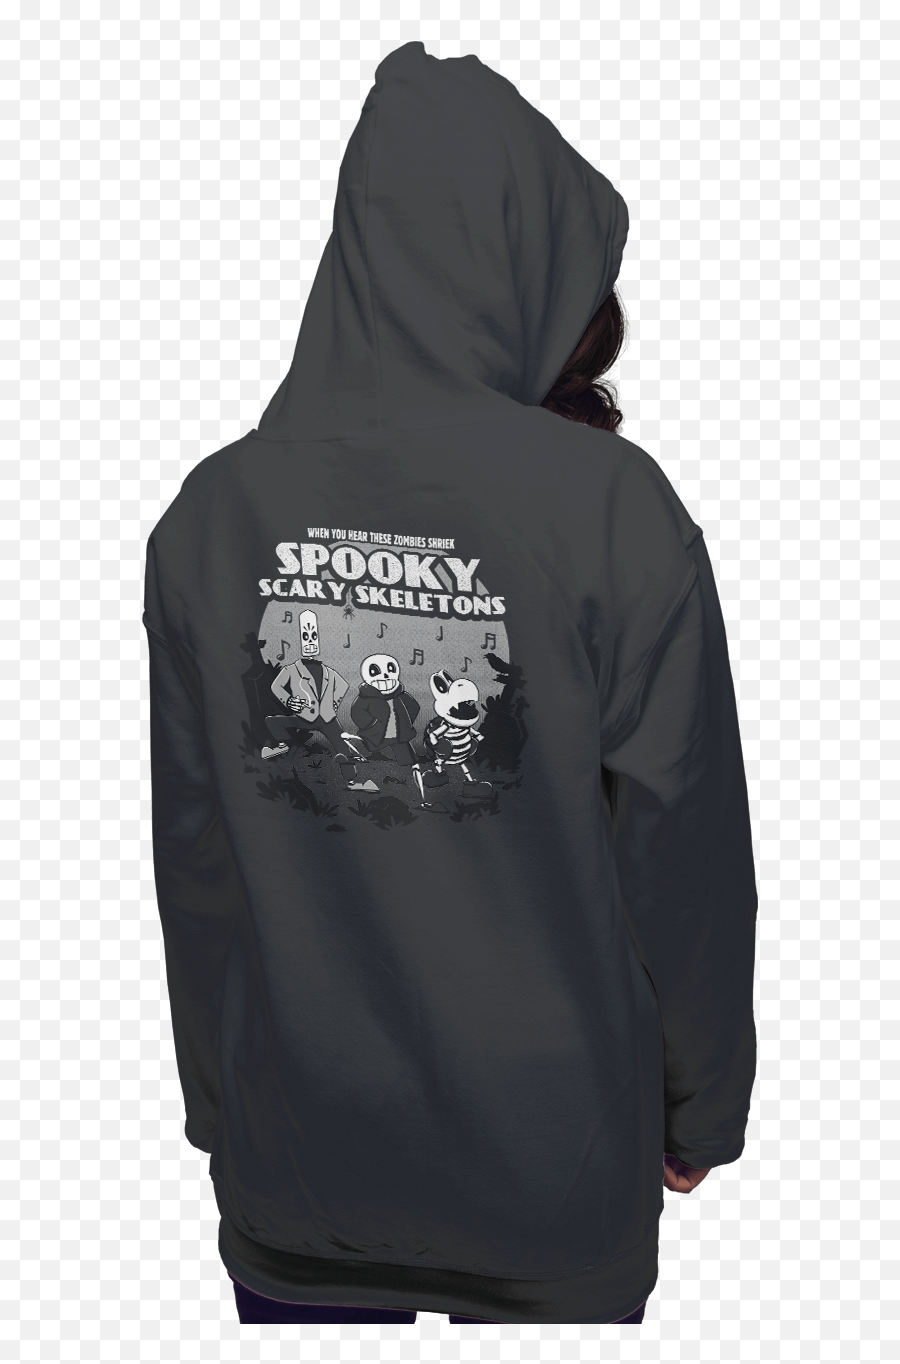 Spooky Skeleton The Worldu0027s Favorite Shirt Shop Shirtpunch - Hooded Png,Spooky Skeleton Transparent